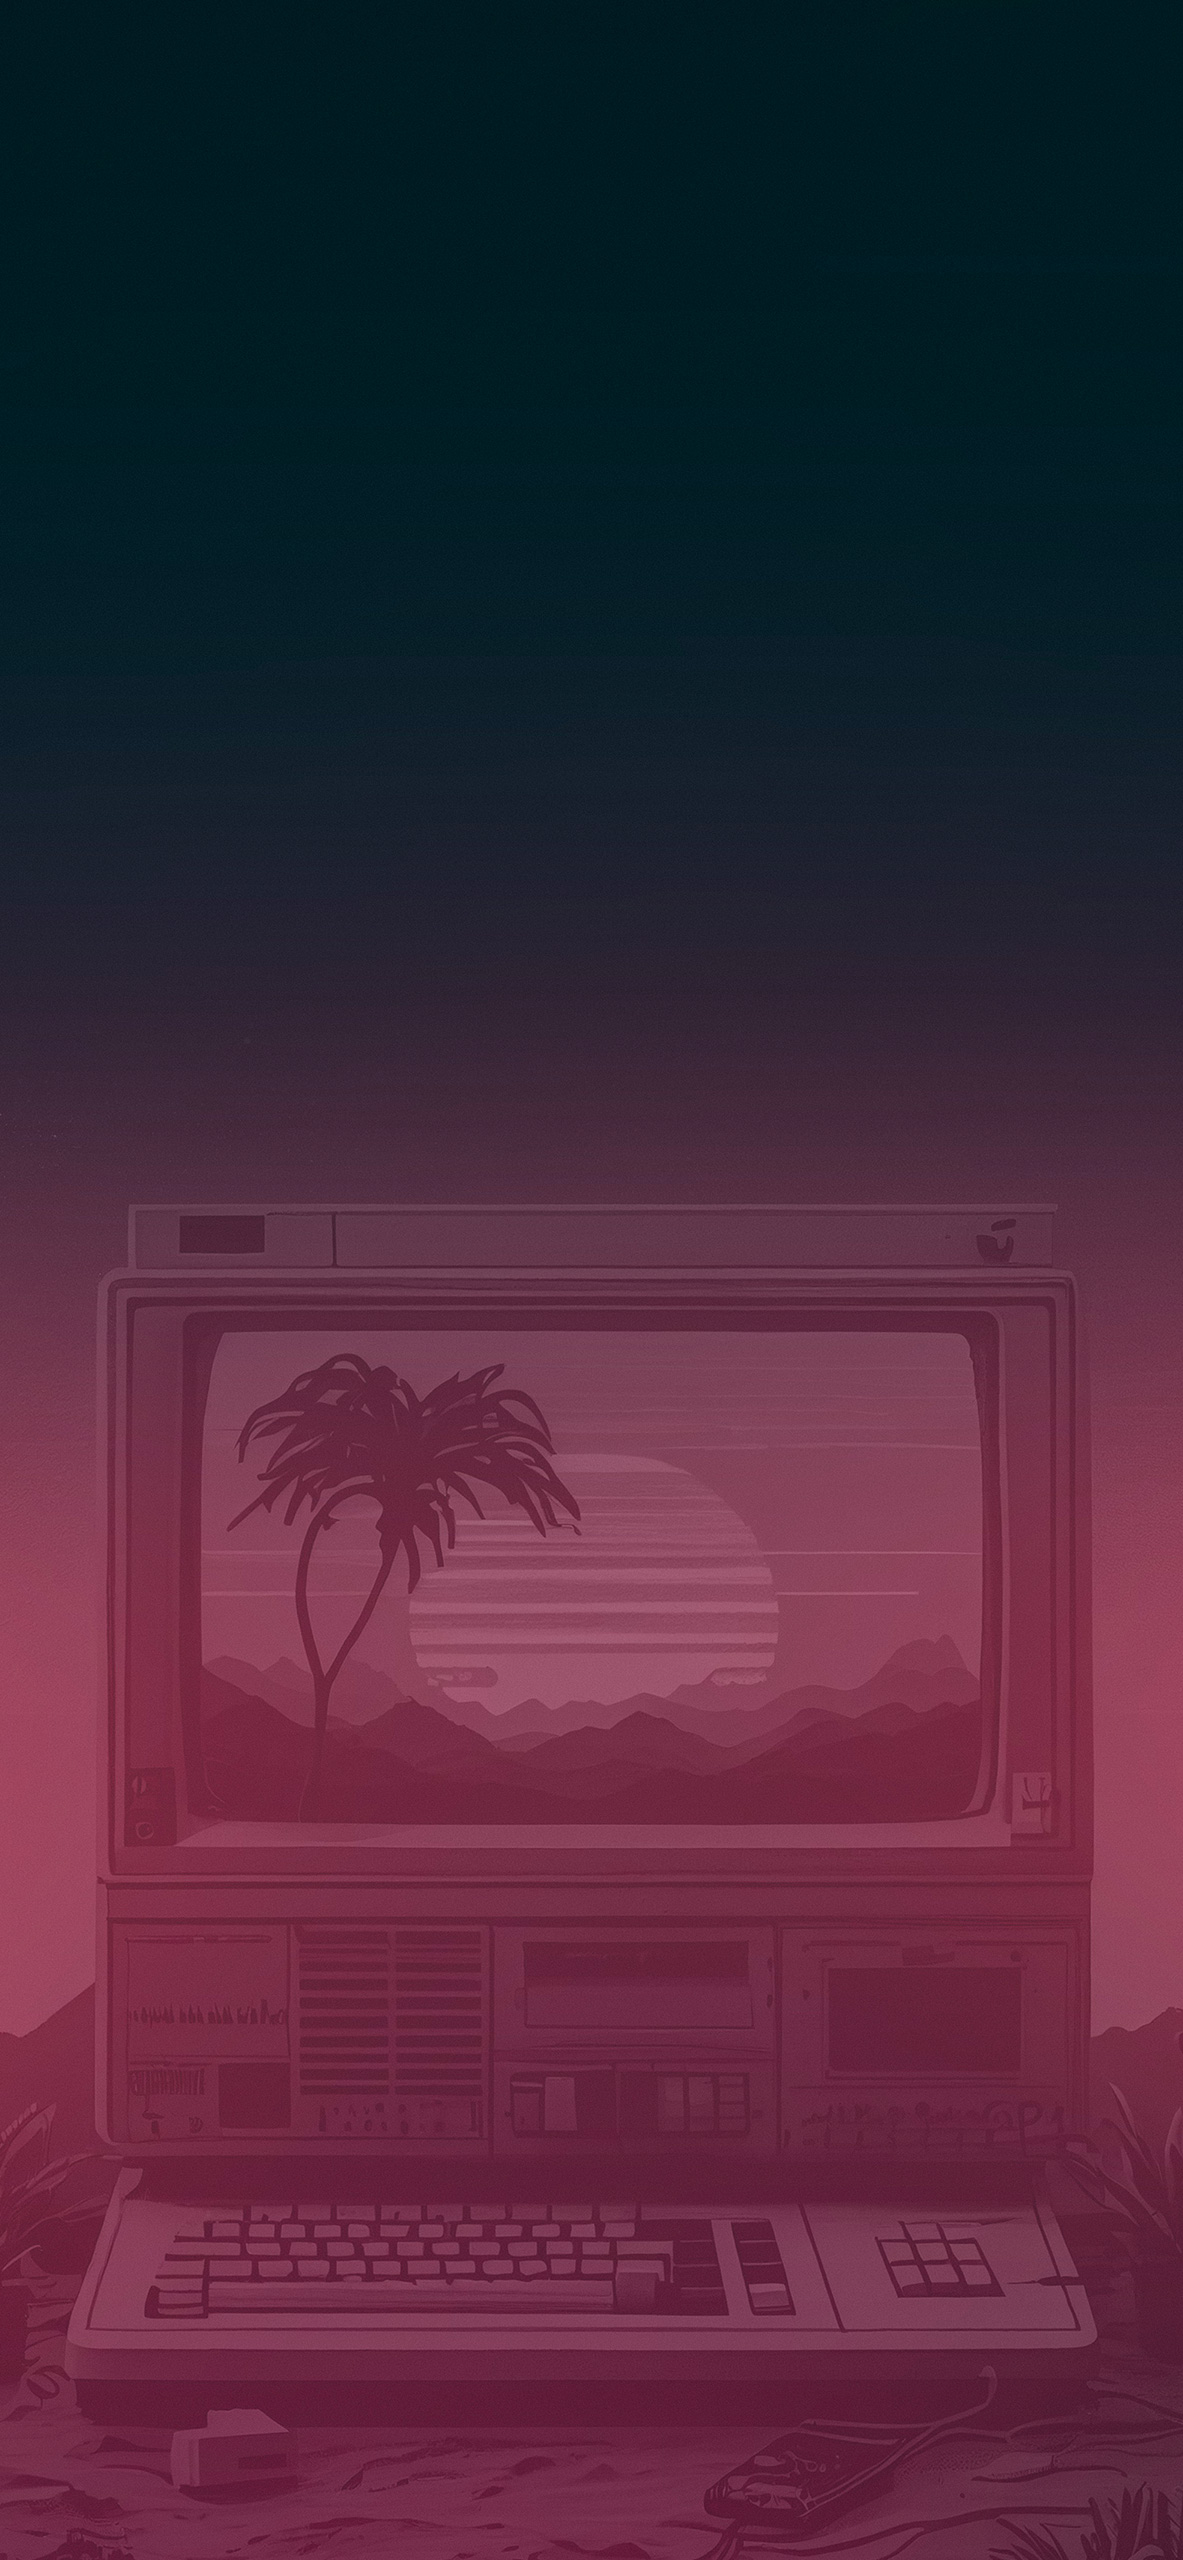 vaporwave computer background